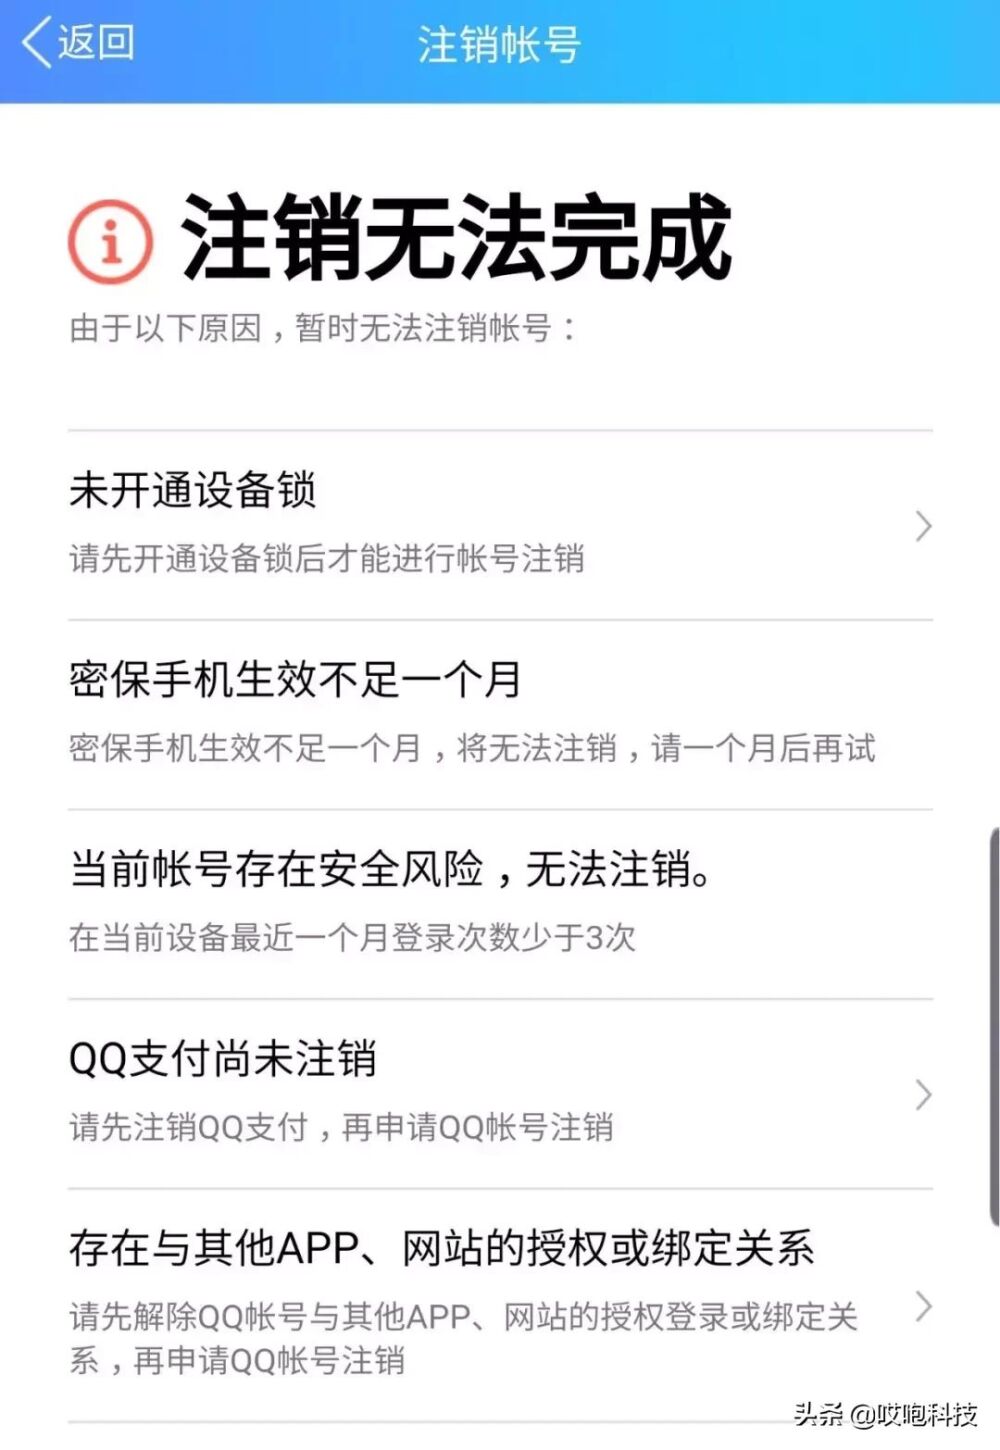 如何永久注销QQ账号？